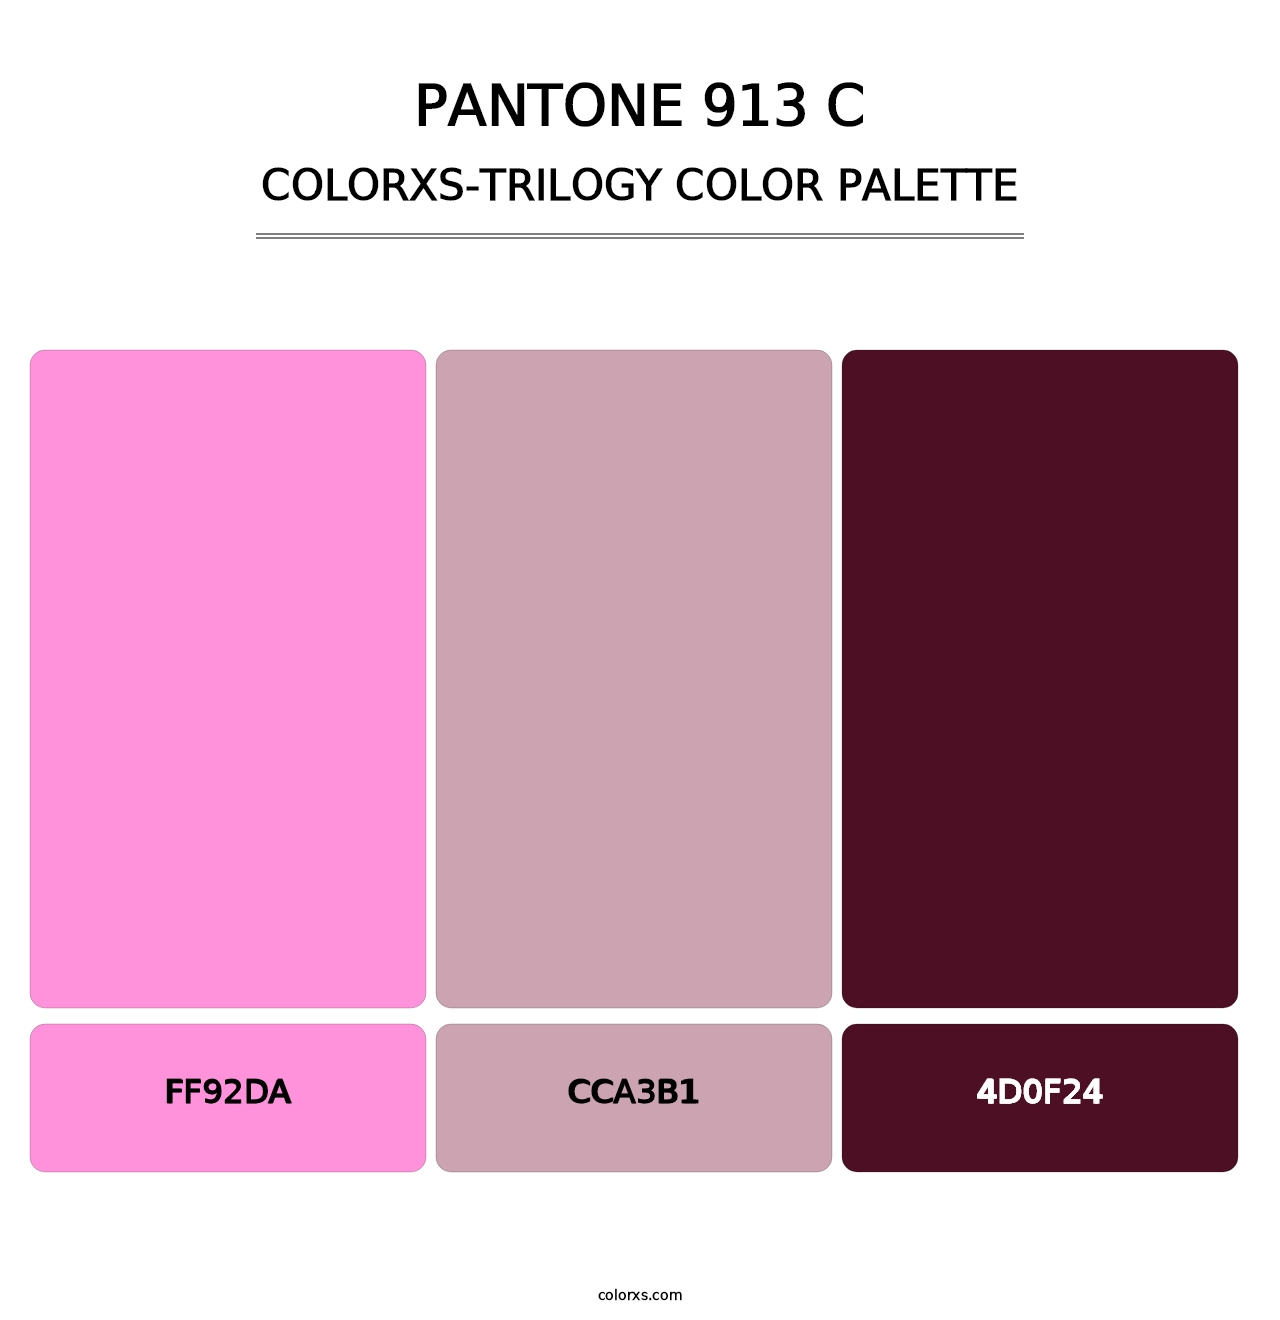 PANTONE 913 C - Colorxs Trilogy Palette